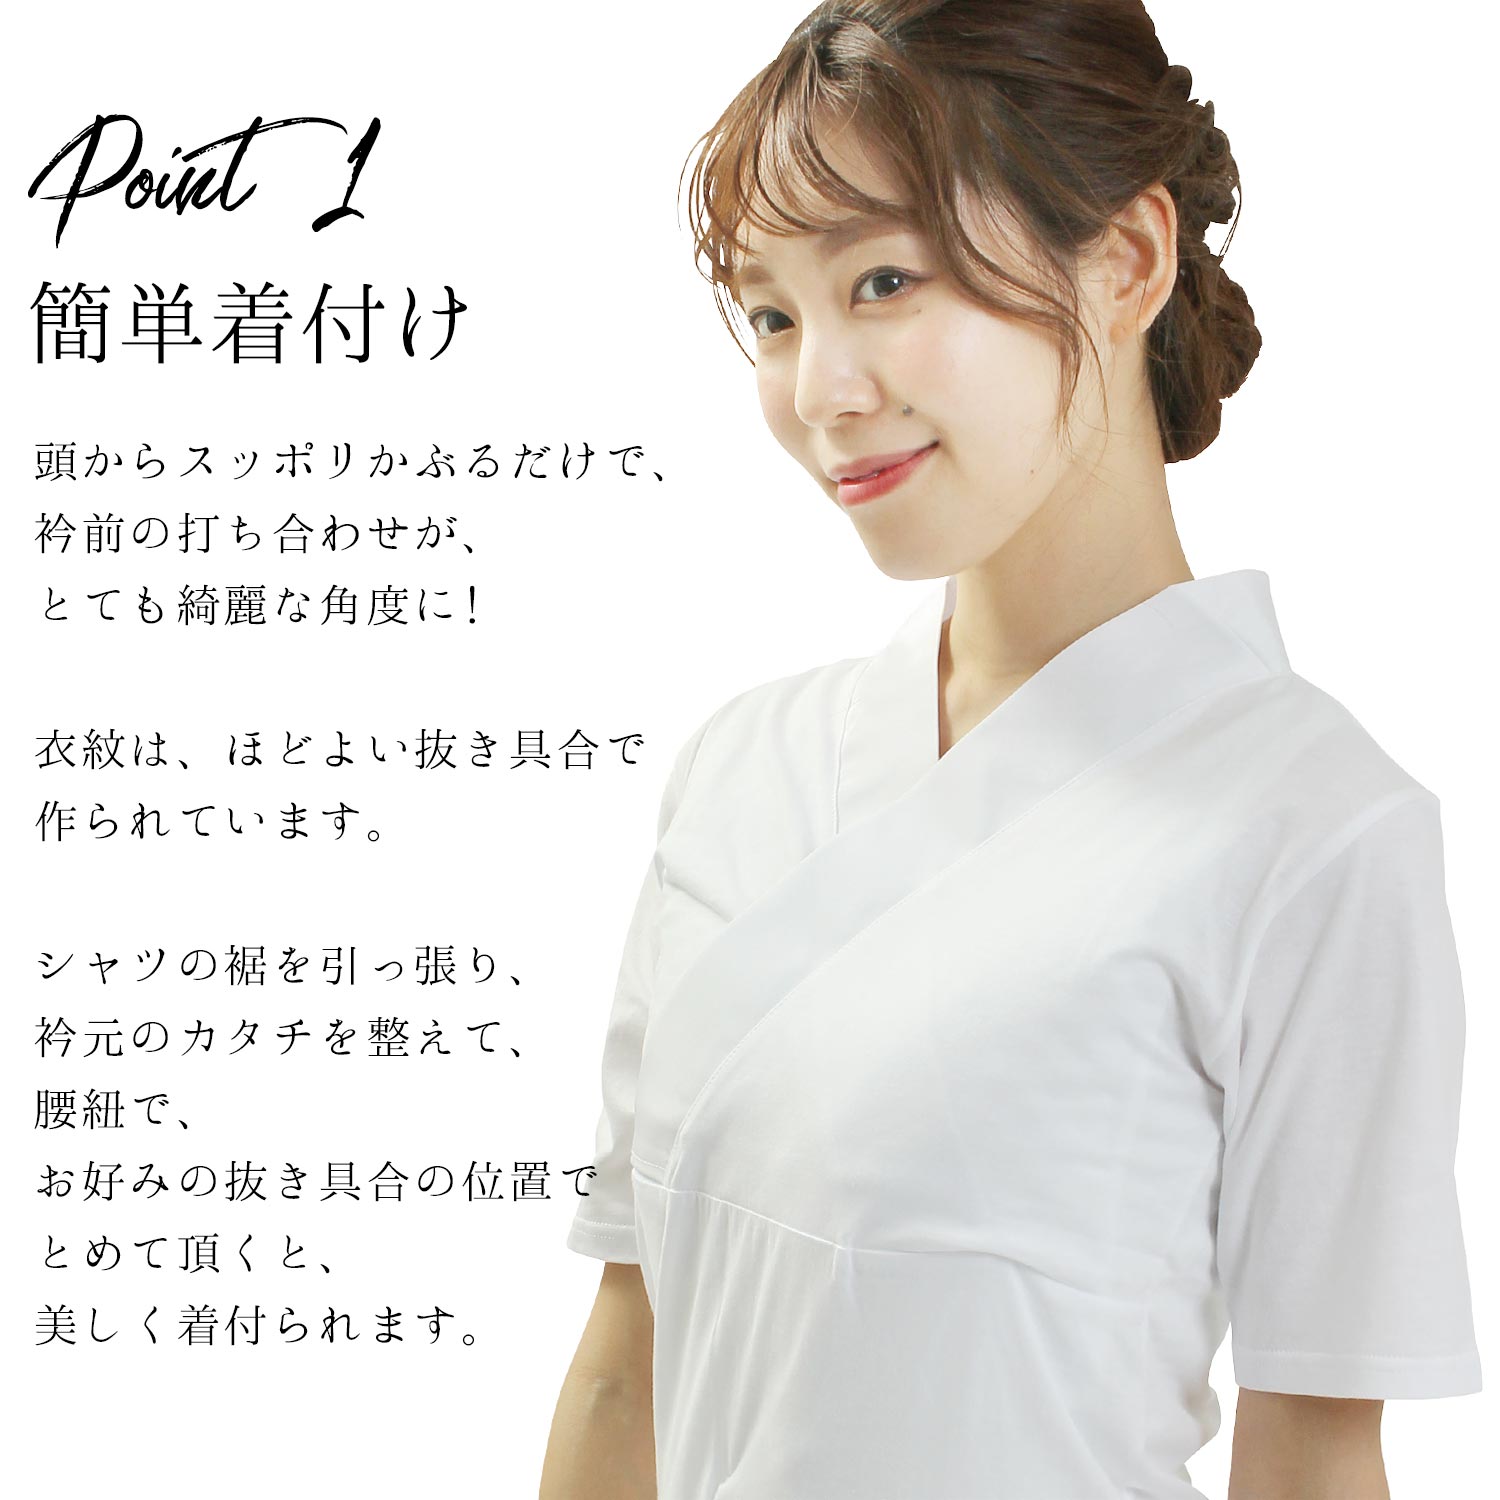 頭からすっぽりかぶるだけ らくらく簡単 Tシャツ半襦袢 襦袢 Tシャツ 半襦袢 和装下着 レディース 女性 白 半衿付き LL 半袖 超歓迎された   日本製 M L